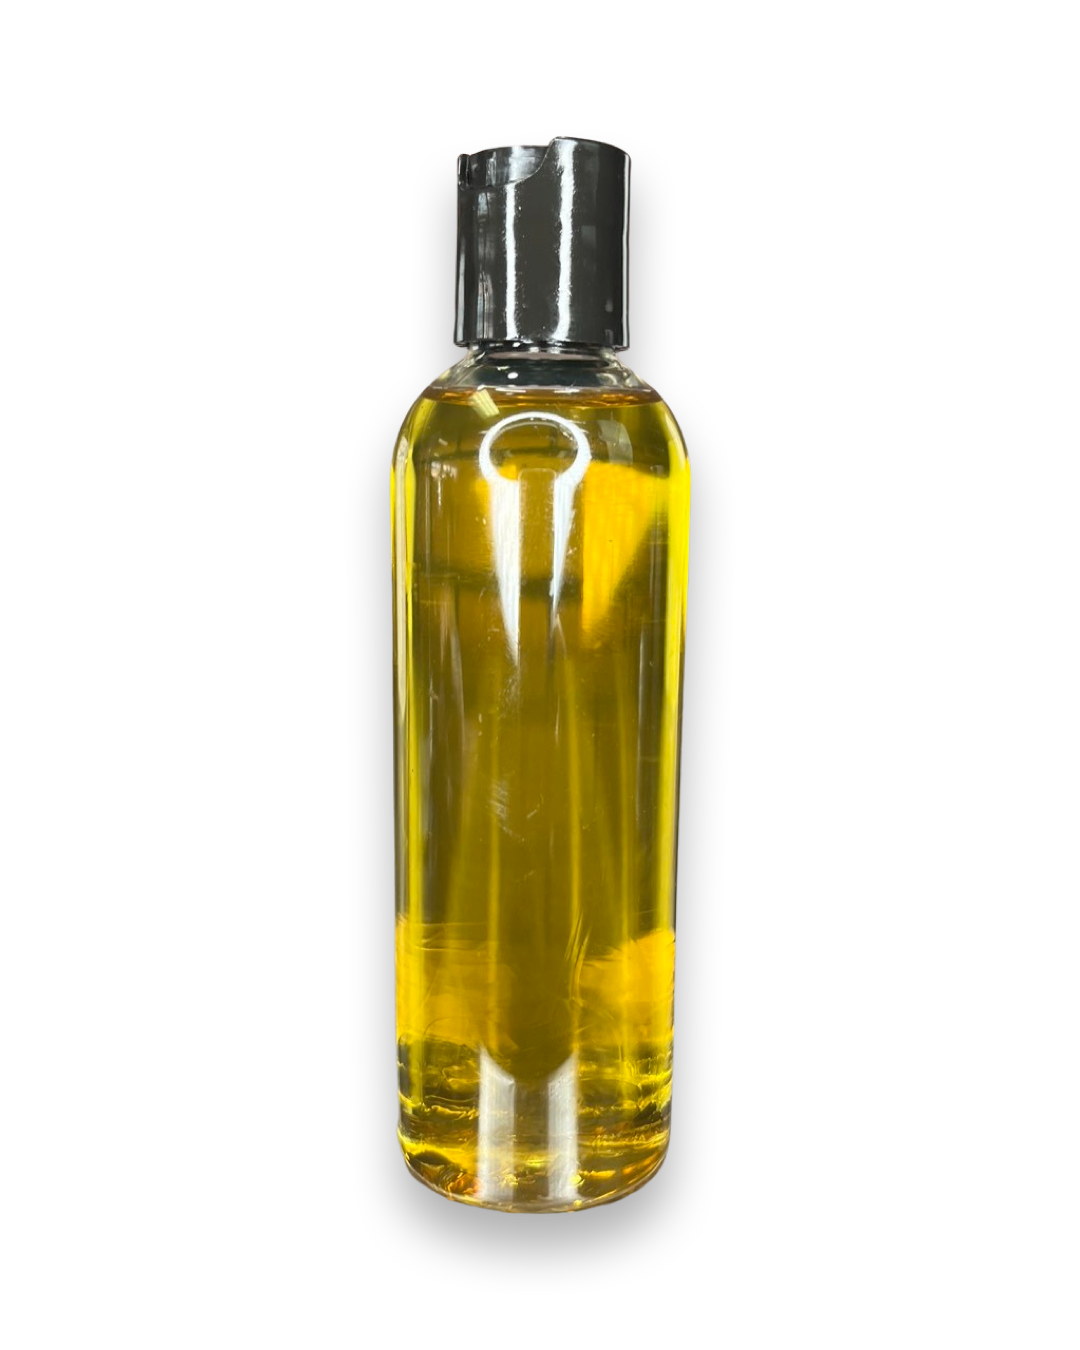 Passionfruit Replenisher Oil